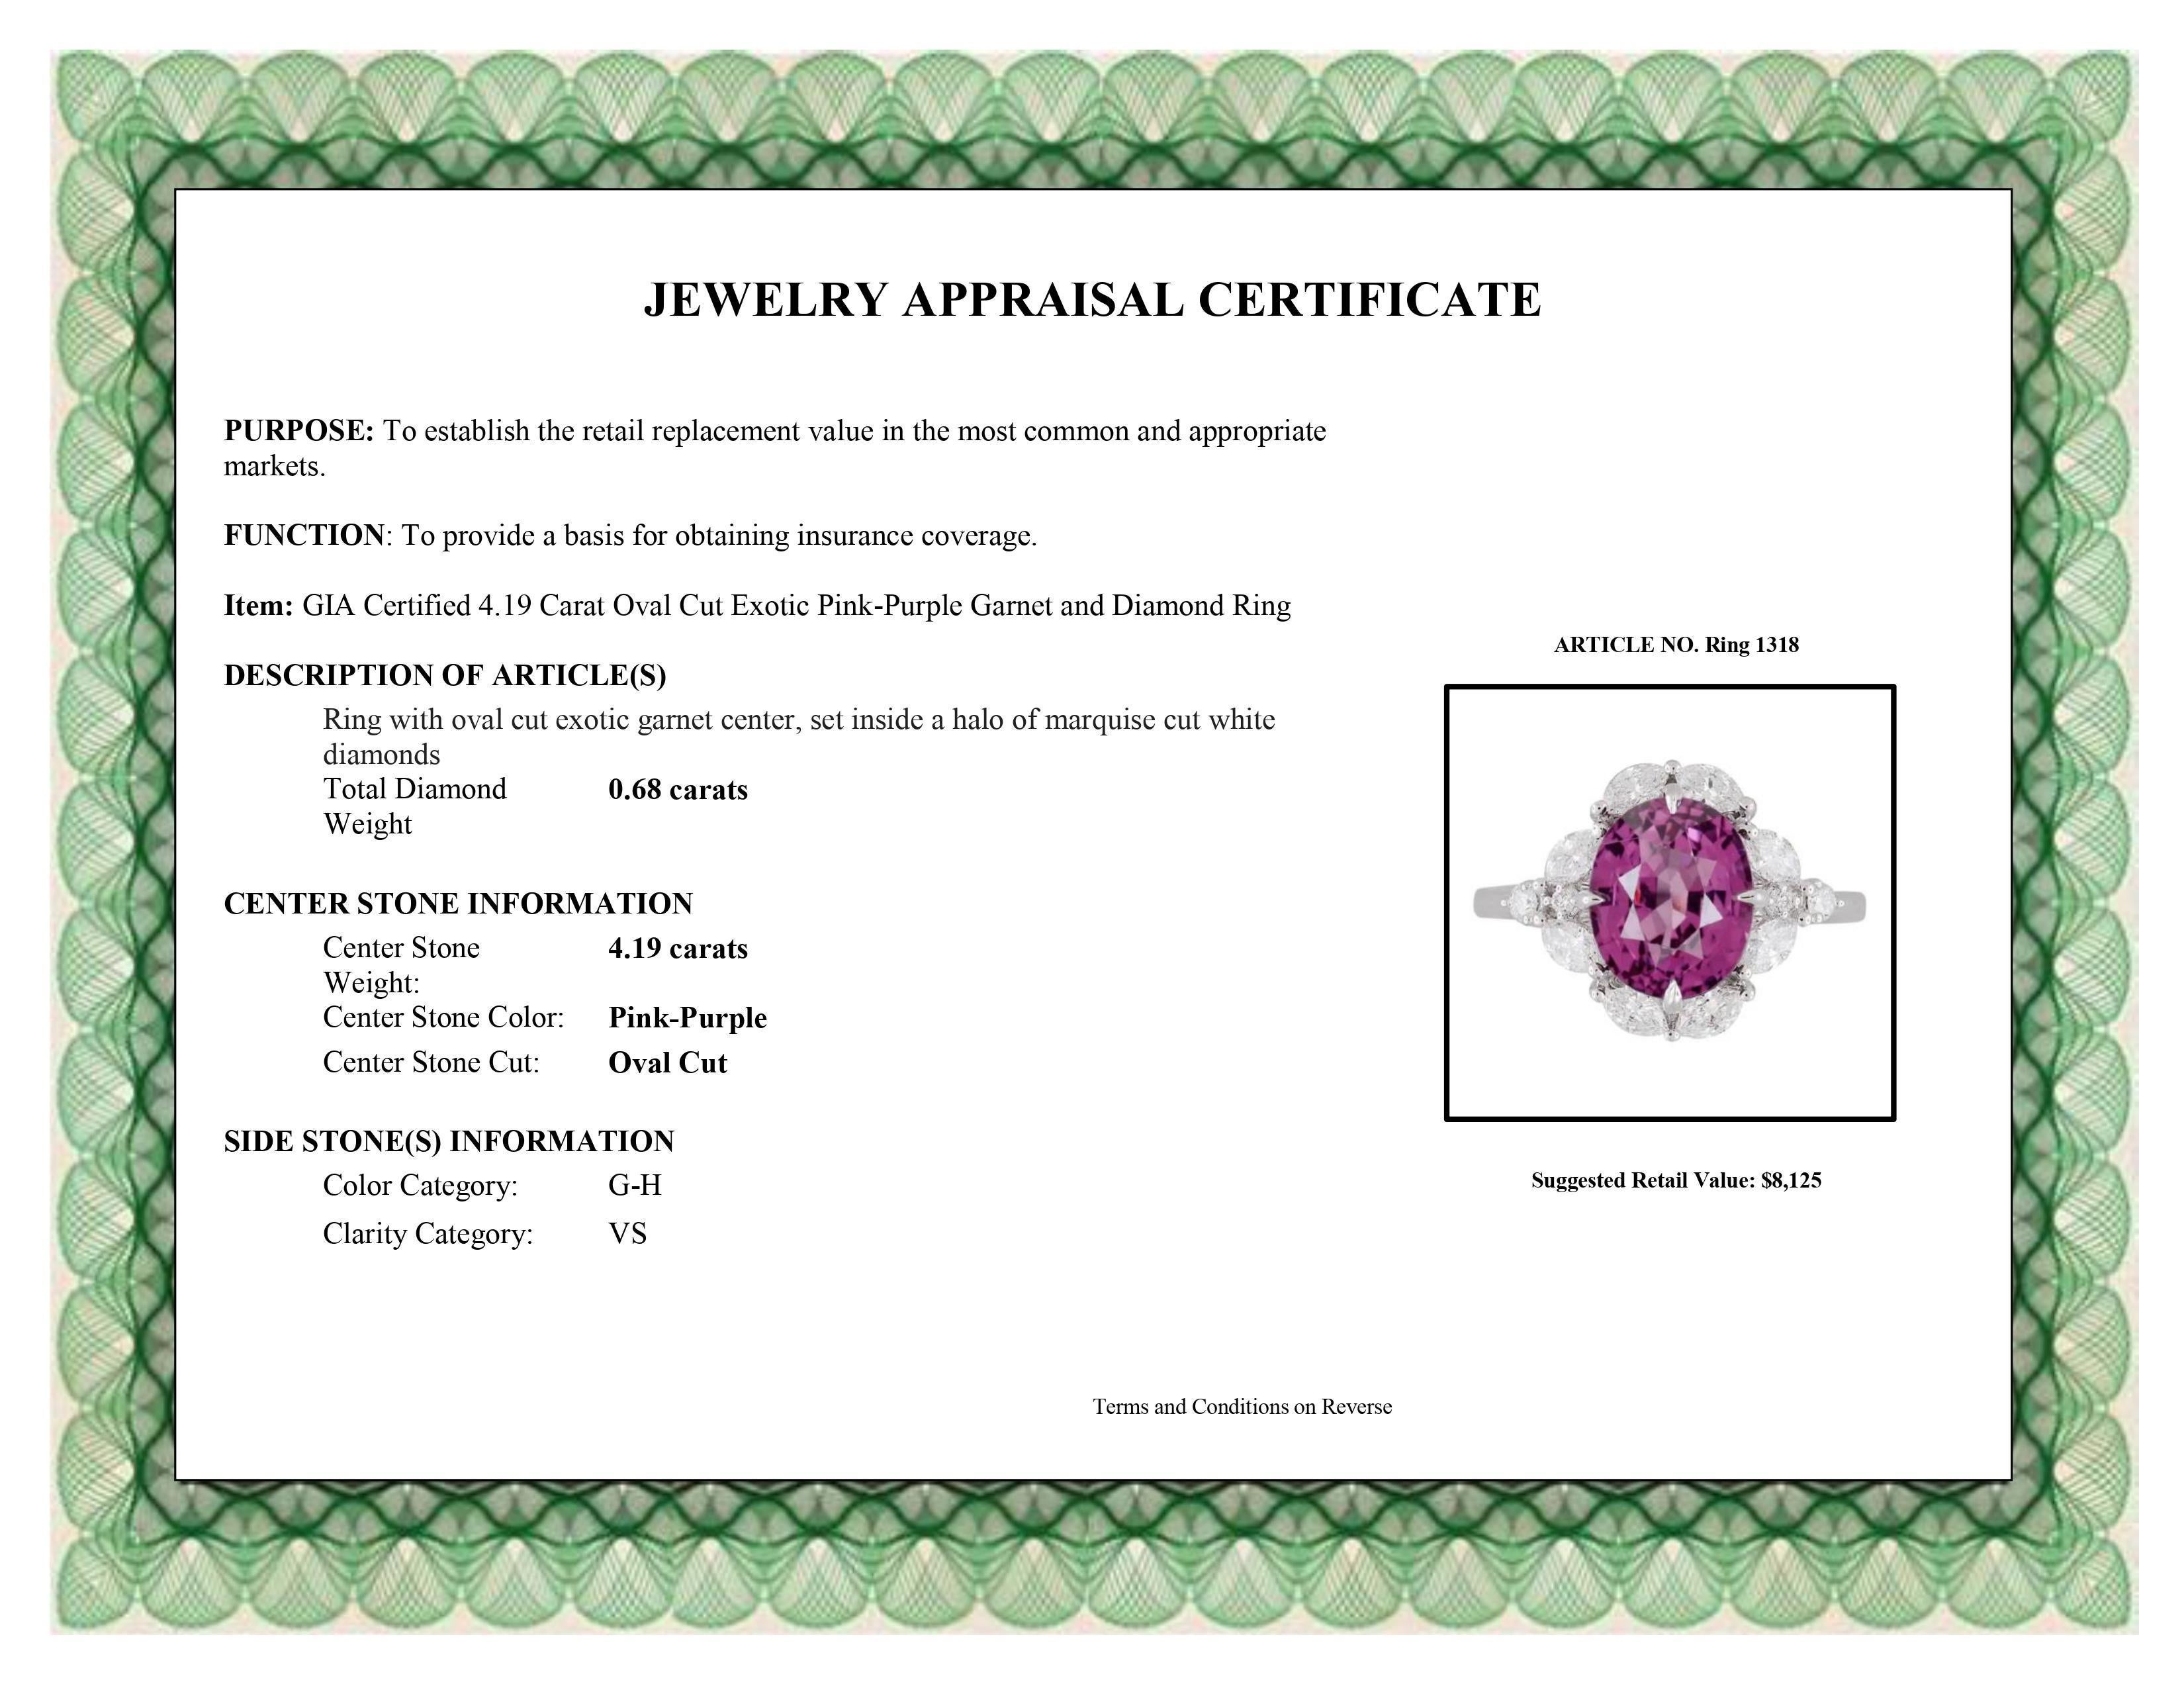 DiamondTown GIA Certified 4.19 Carat Oval Cut Exotic Pink-Purple Garnet Ring 2